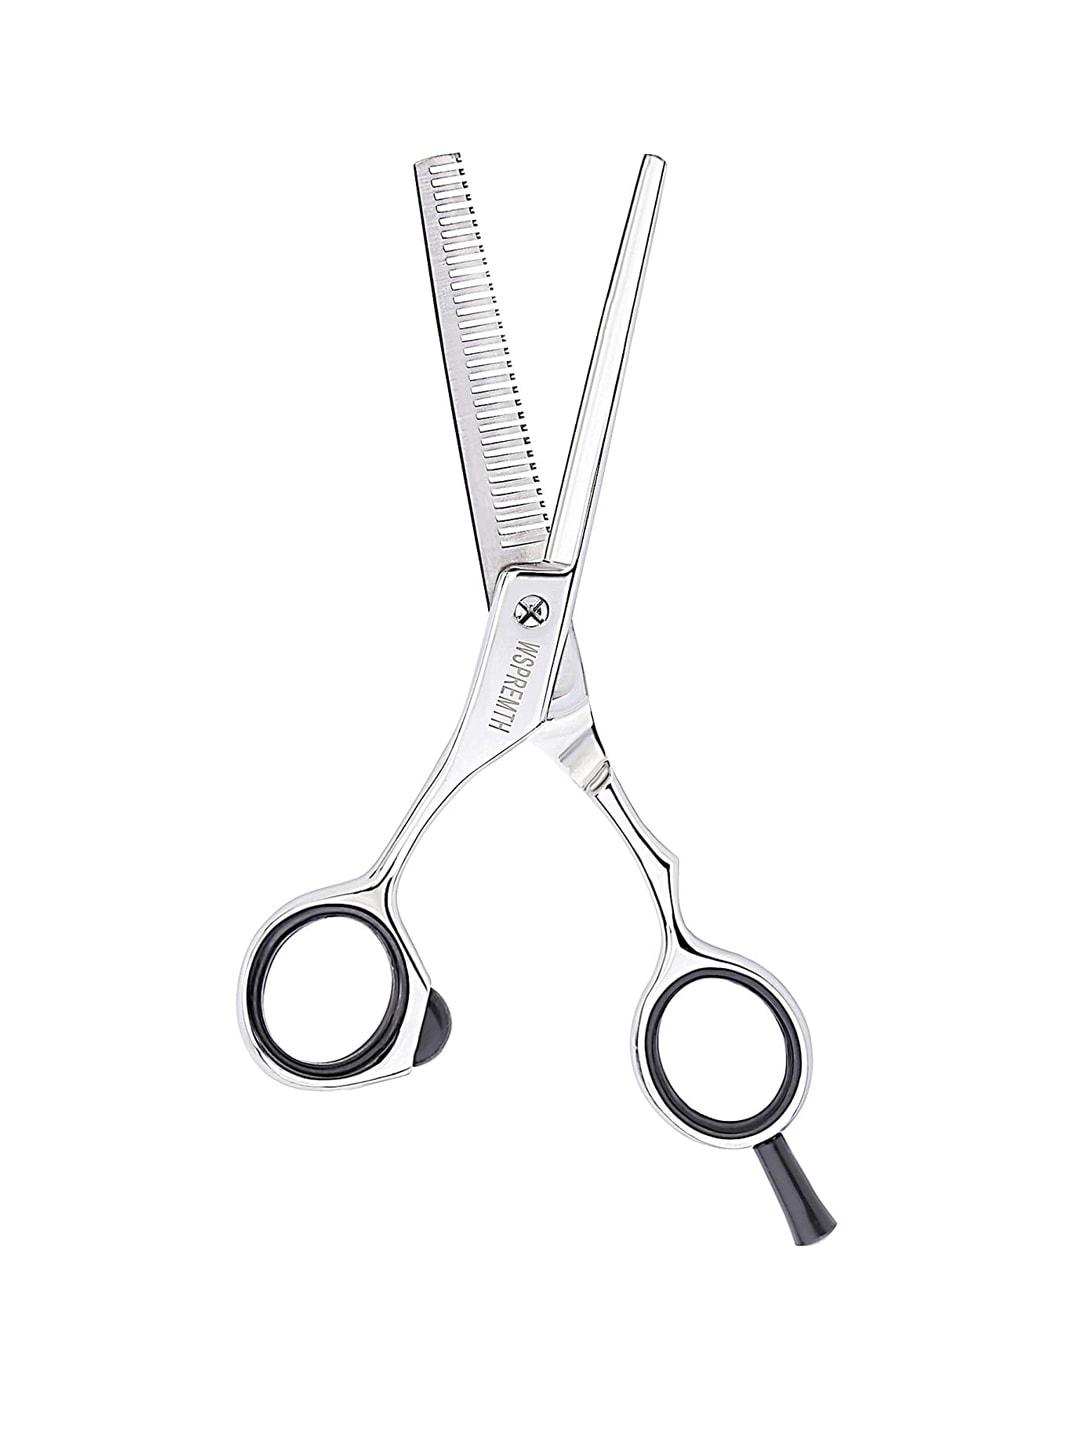 WAHL Steel-Toned Premium 5.5 Thinner Scissors